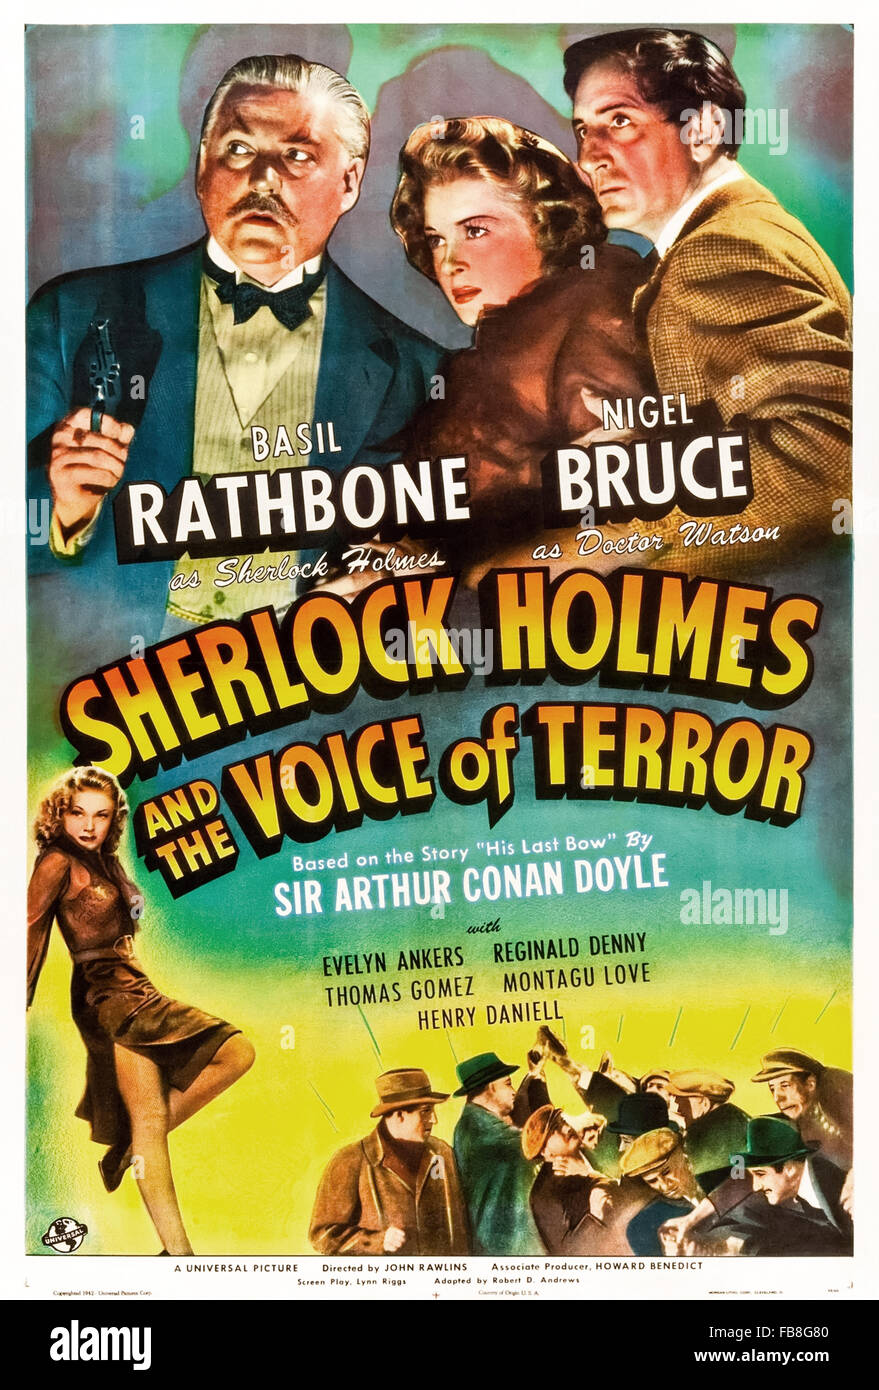 Plakat für "Sherlock Holmes und die Stimme des Terrors" 1942 Film unter der Regie von John Rawlins und Darsteller Basil Rathbone (Holmes); Nigel Bruce (Watson) und Evelyn Anker (Kitty). Siehe Beschreibung für mehr Informationen. Stockfoto